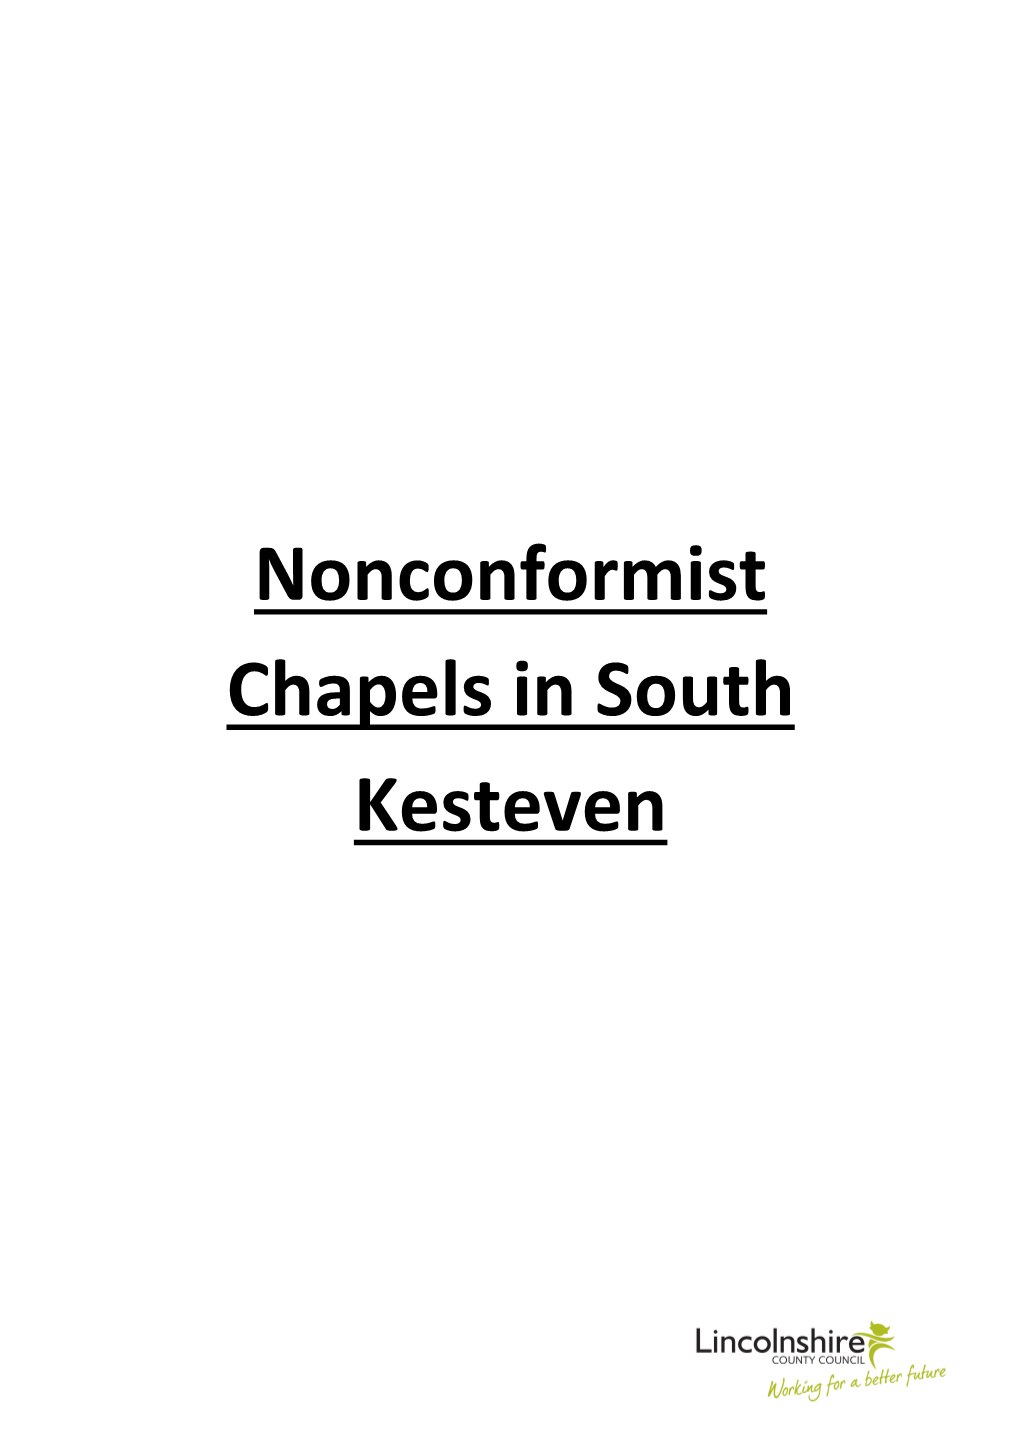 Nonconformist Chapels in South Kesteven